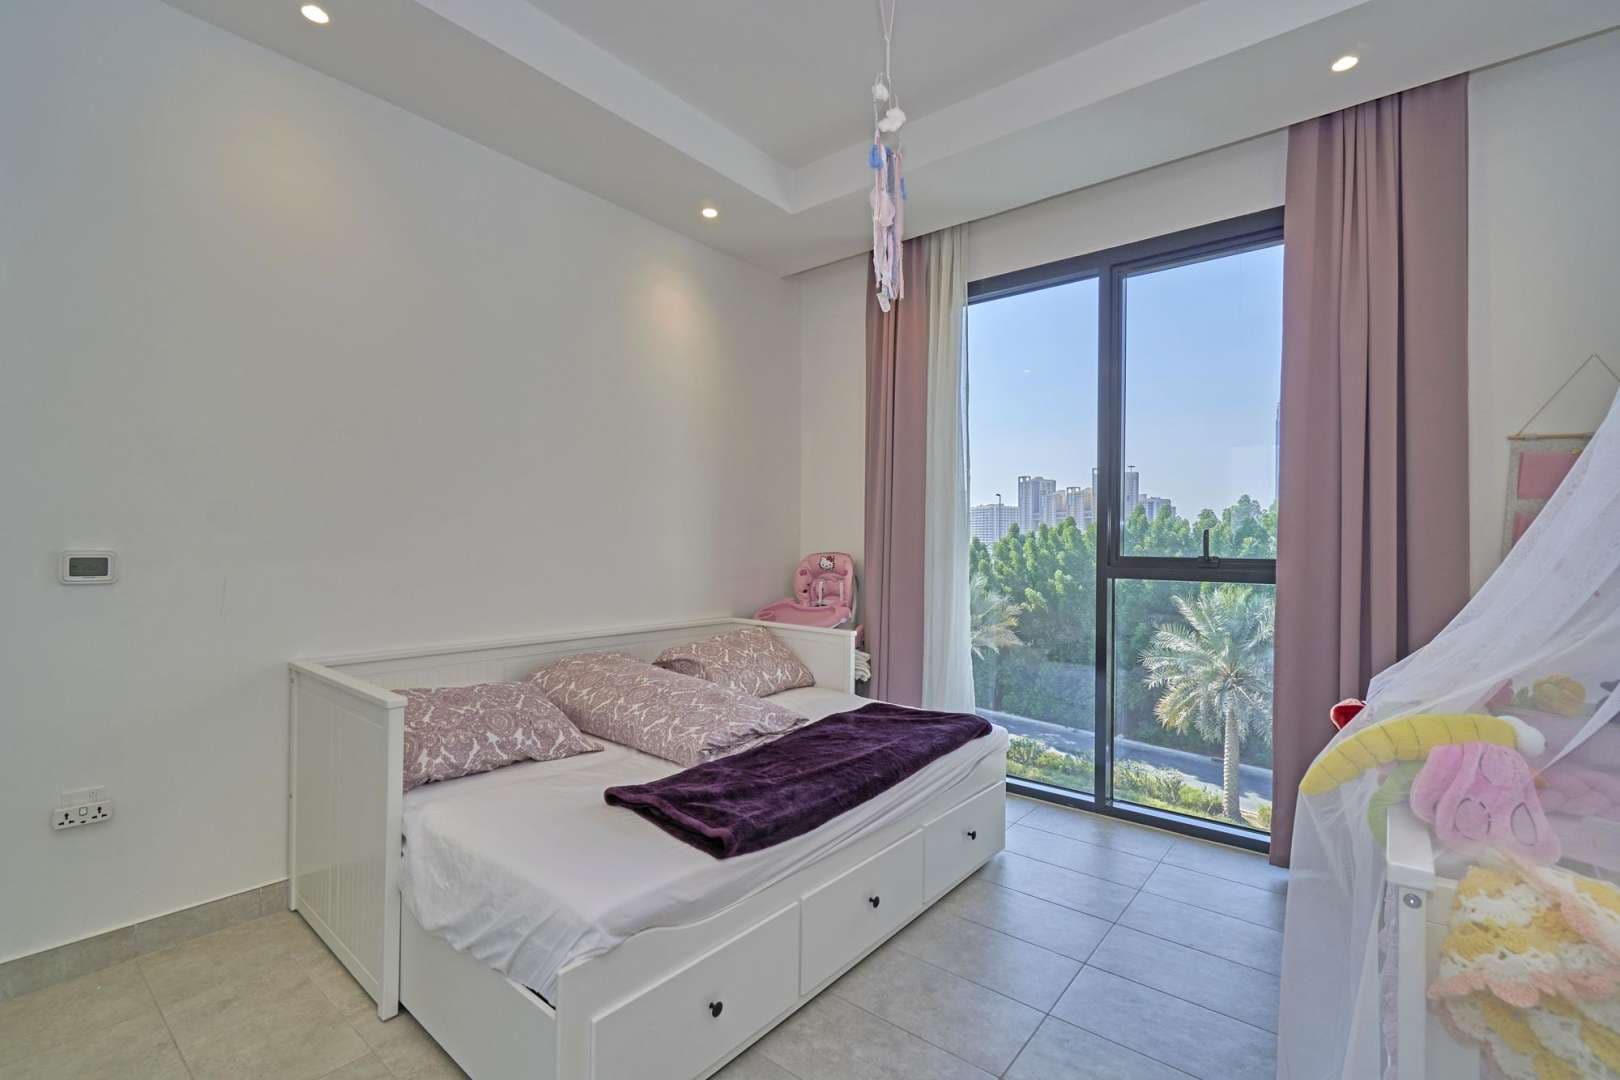 2 Bedroom Apartment For Sale Hyati Residence Lp05424 1e83e59363862200.jpg